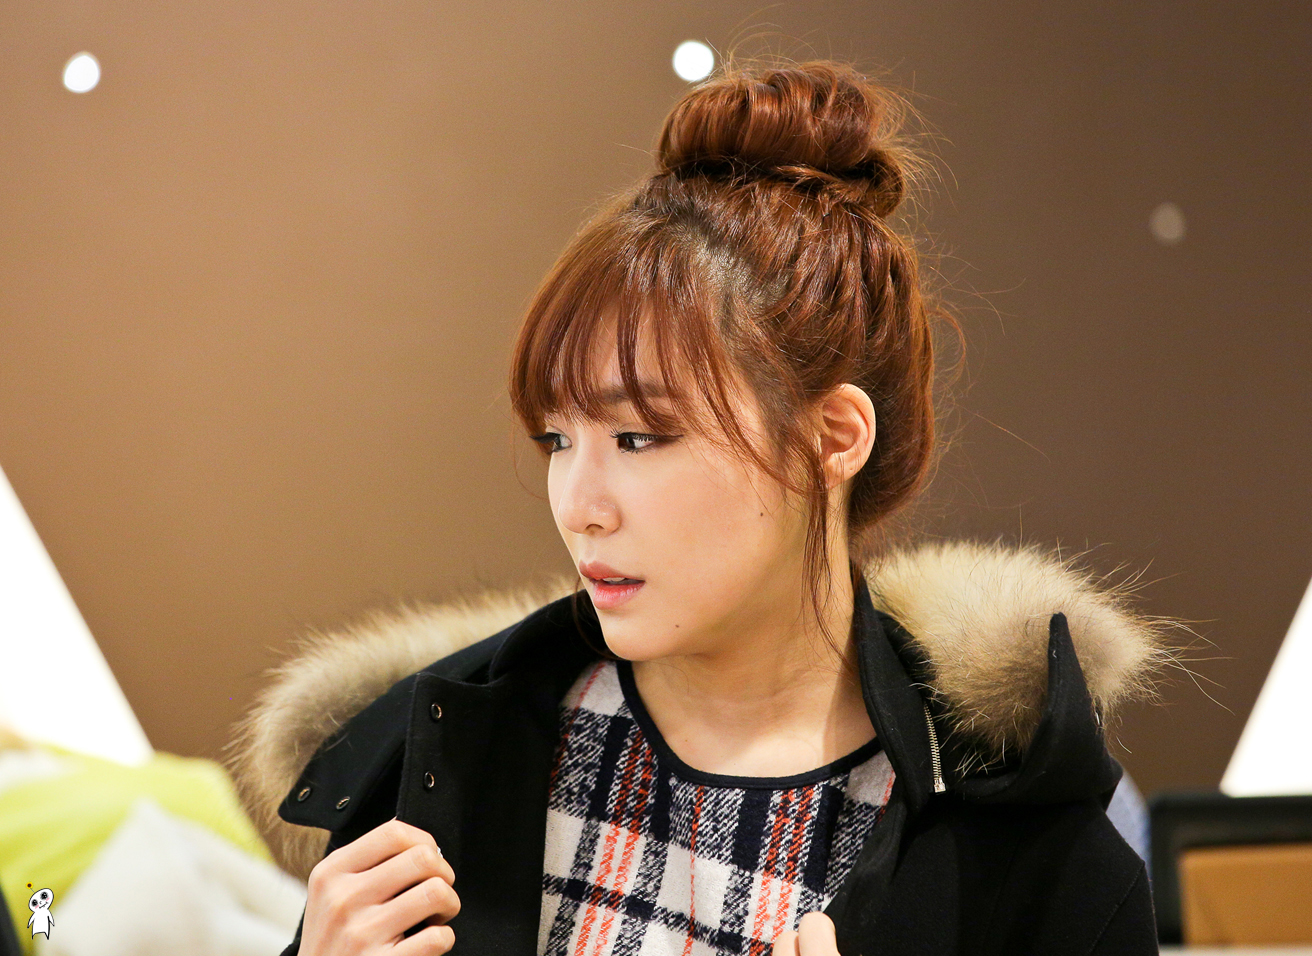 [PIC][28-11-2013]Tiffany ghé thăm cửa hàng "QUA" ở Hyundai Department Store vào trưa nay - Page 3 276E254052980CAC285293